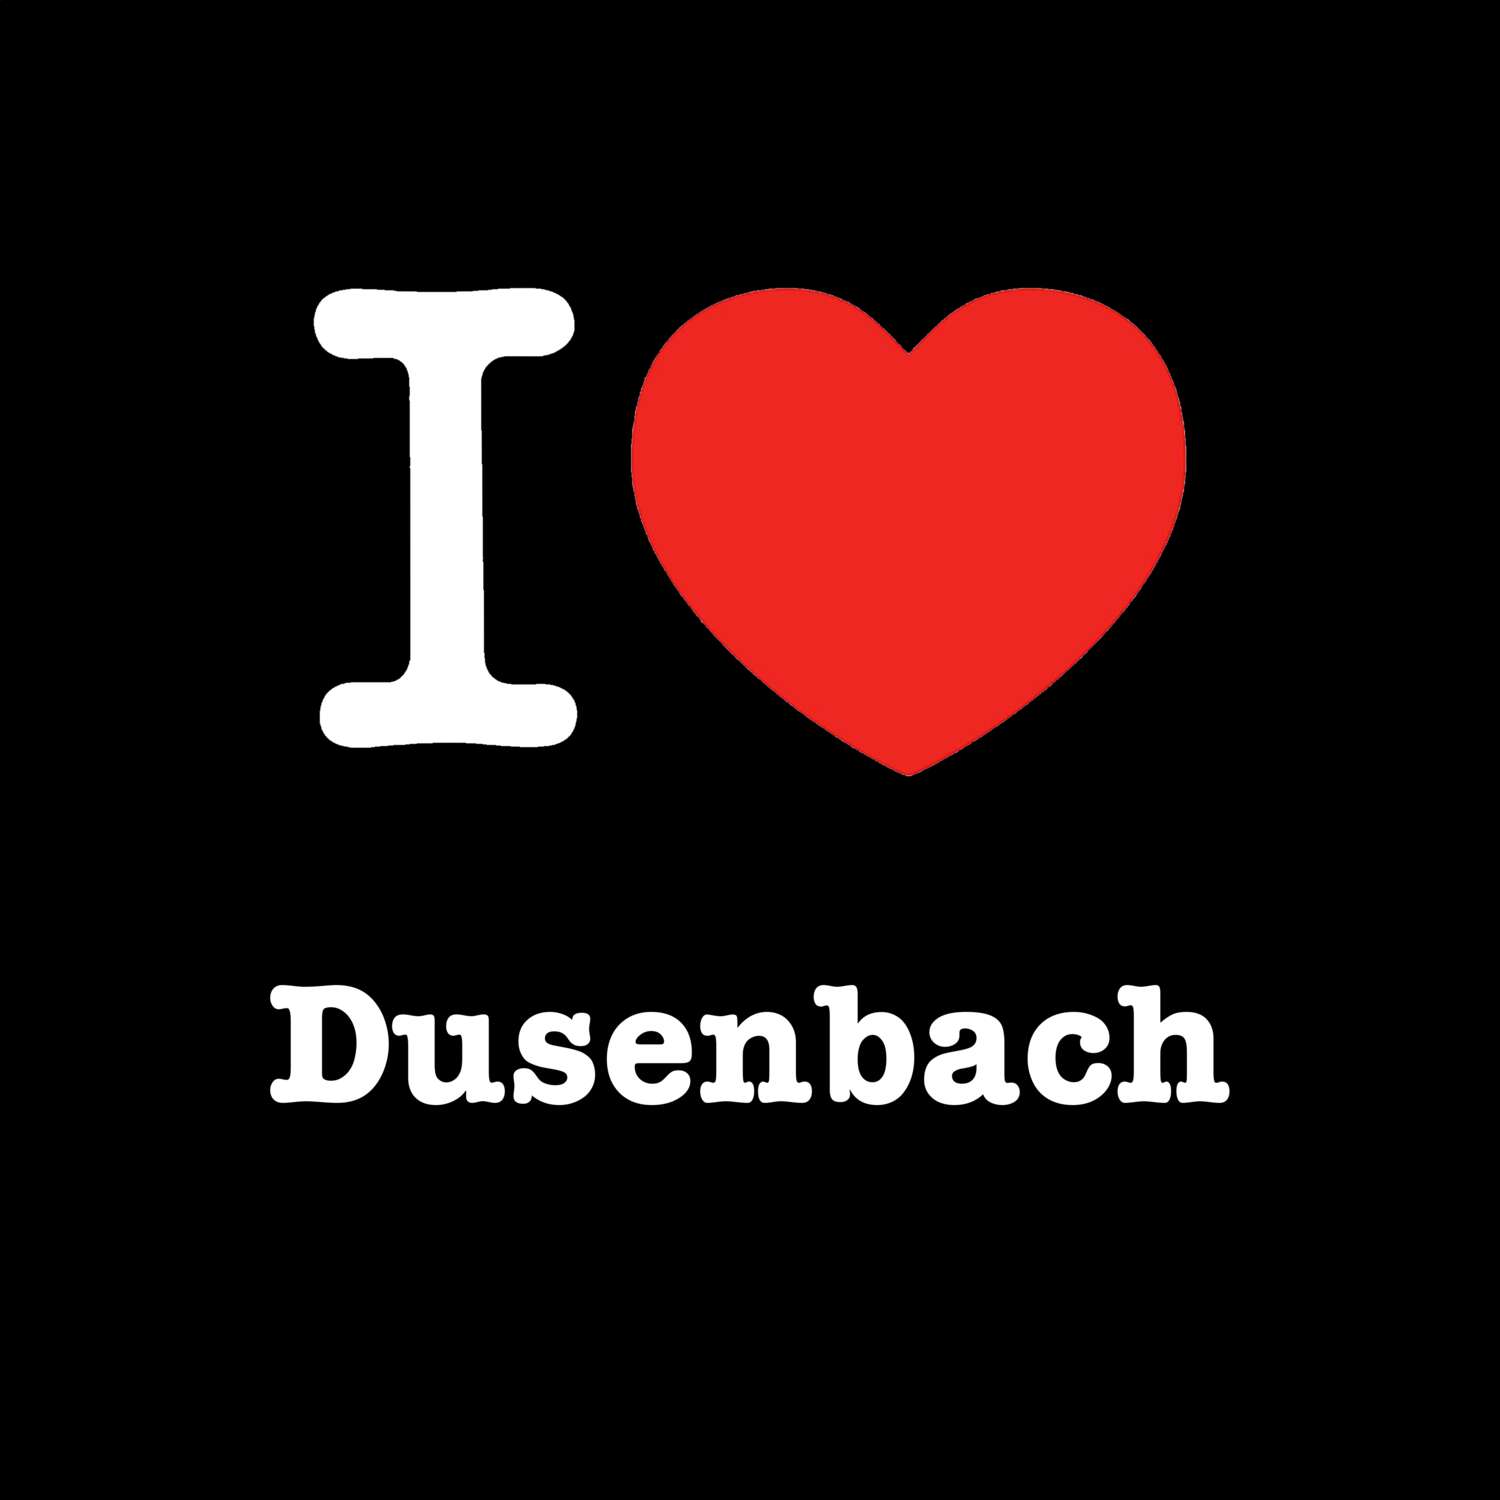 Dusenbach T-Shirt »I love«